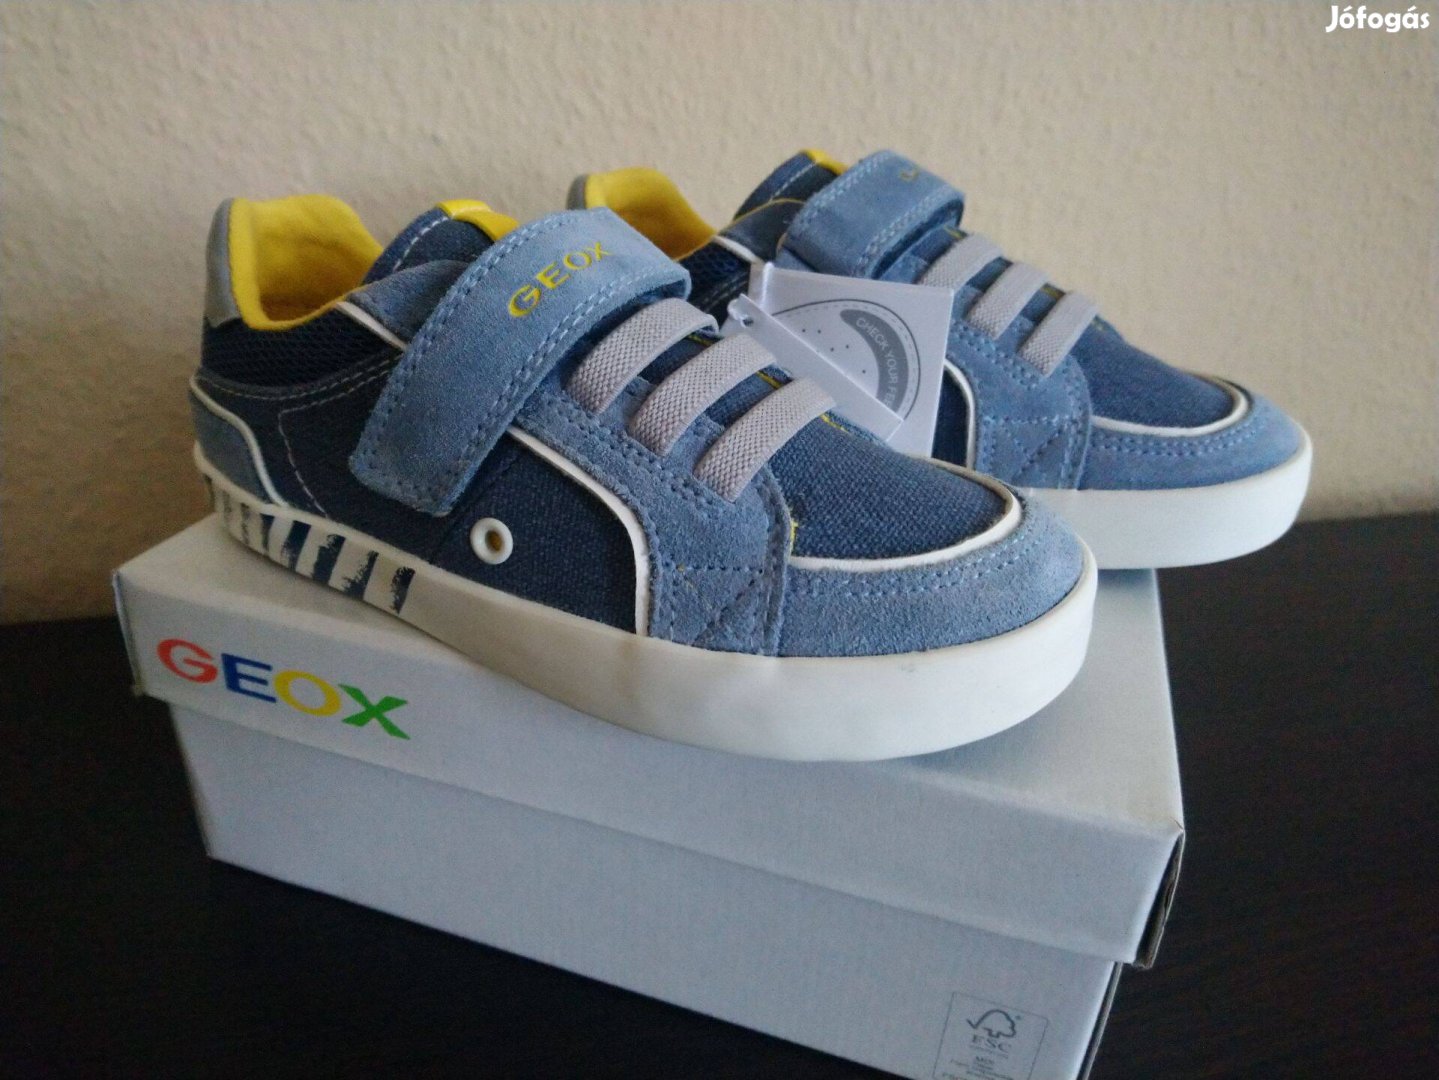 Geox gyerek cipő